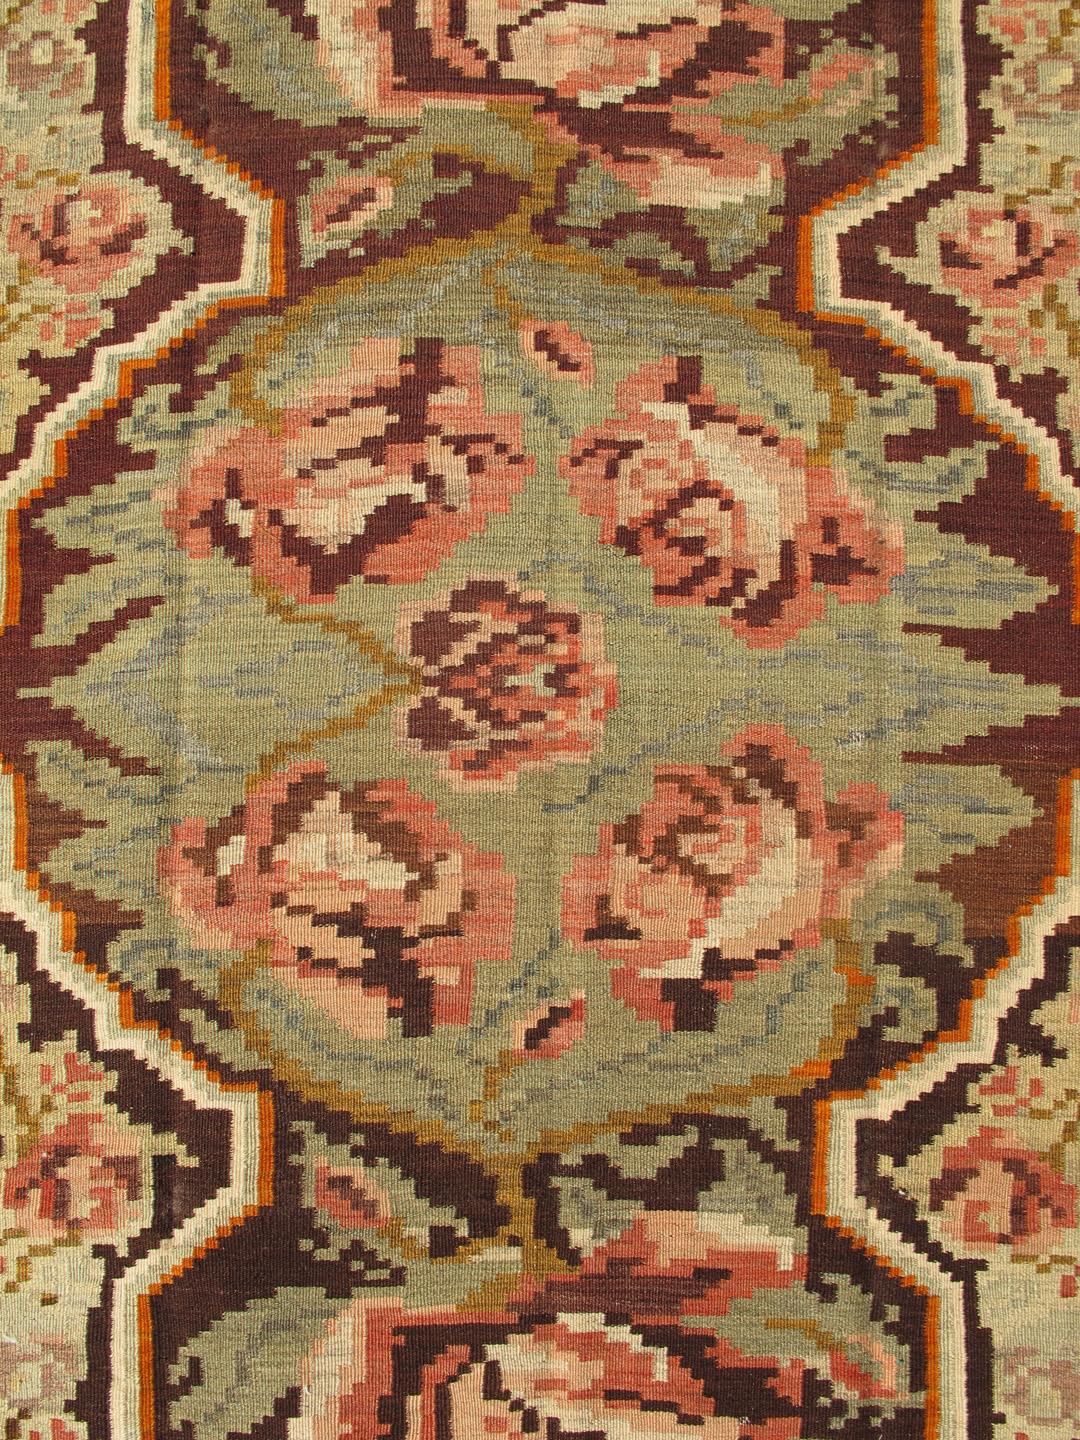 Vintage French pattern Kilim in green, brown and multi colors, Kb-H-401-14, Vintage Turkish Kilim rug
tapis Kilim vintage fait à la main, avec un beau médaillon central et des motifs floraux en vert, brun et multicolore.
Mesures : 5' x 8'4.
   